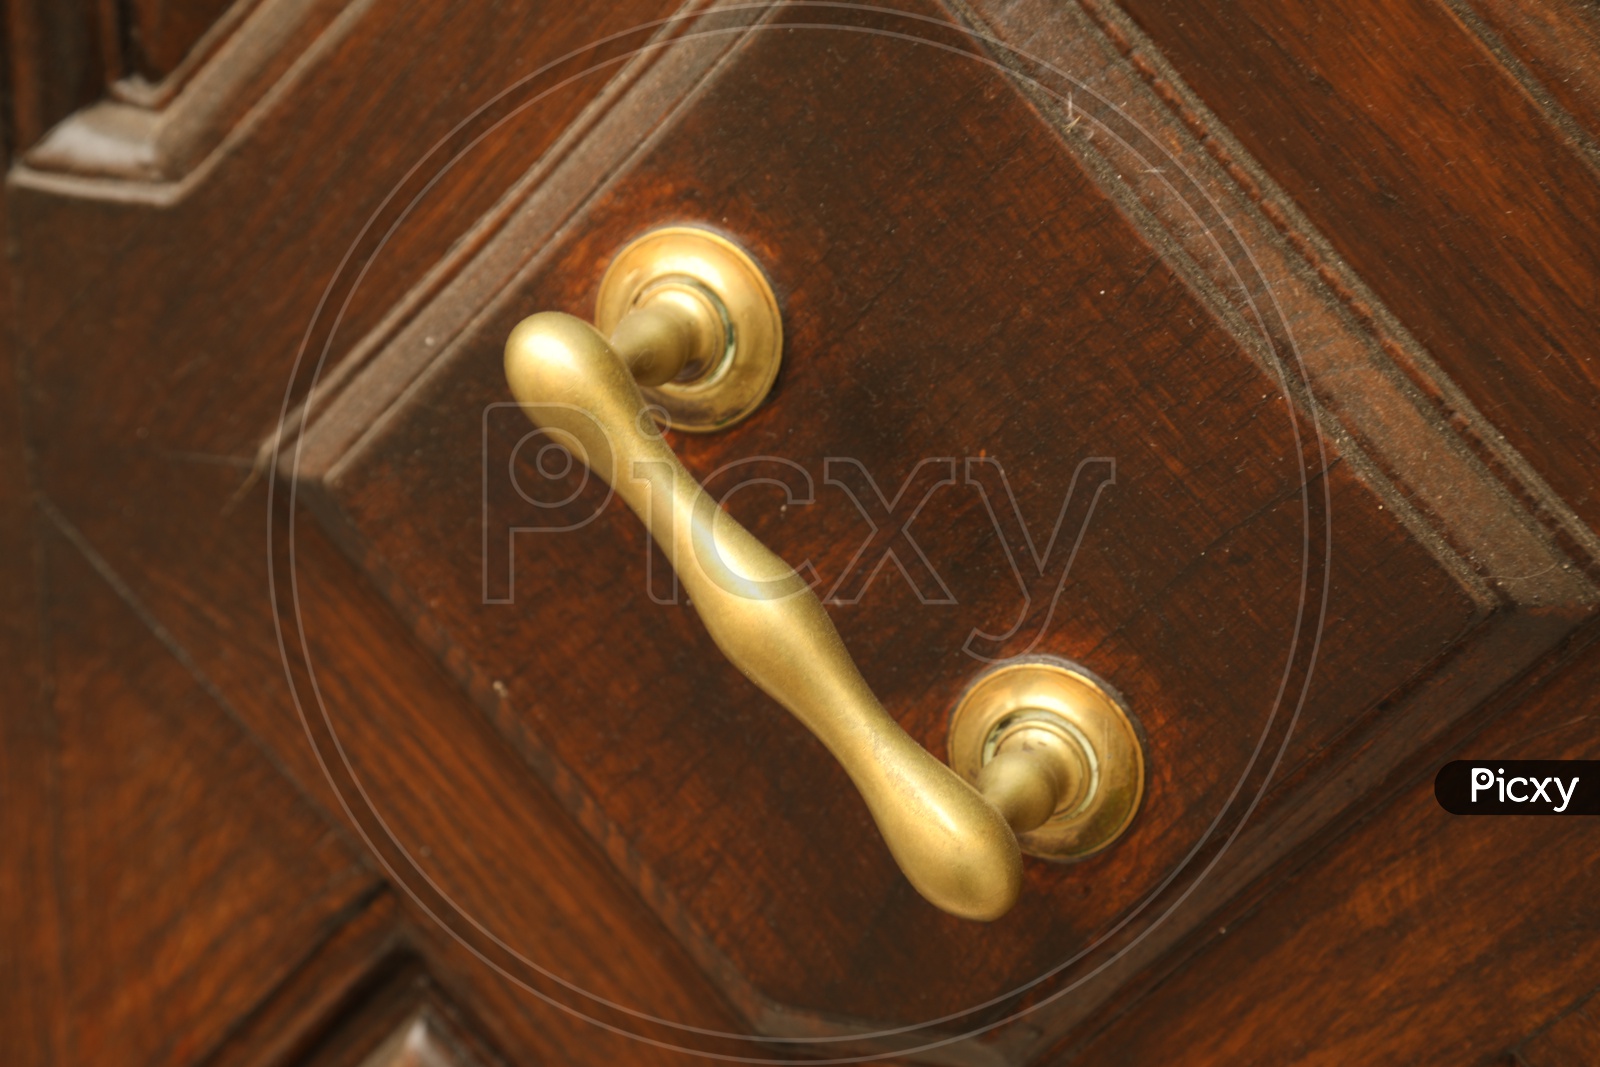 A door handle